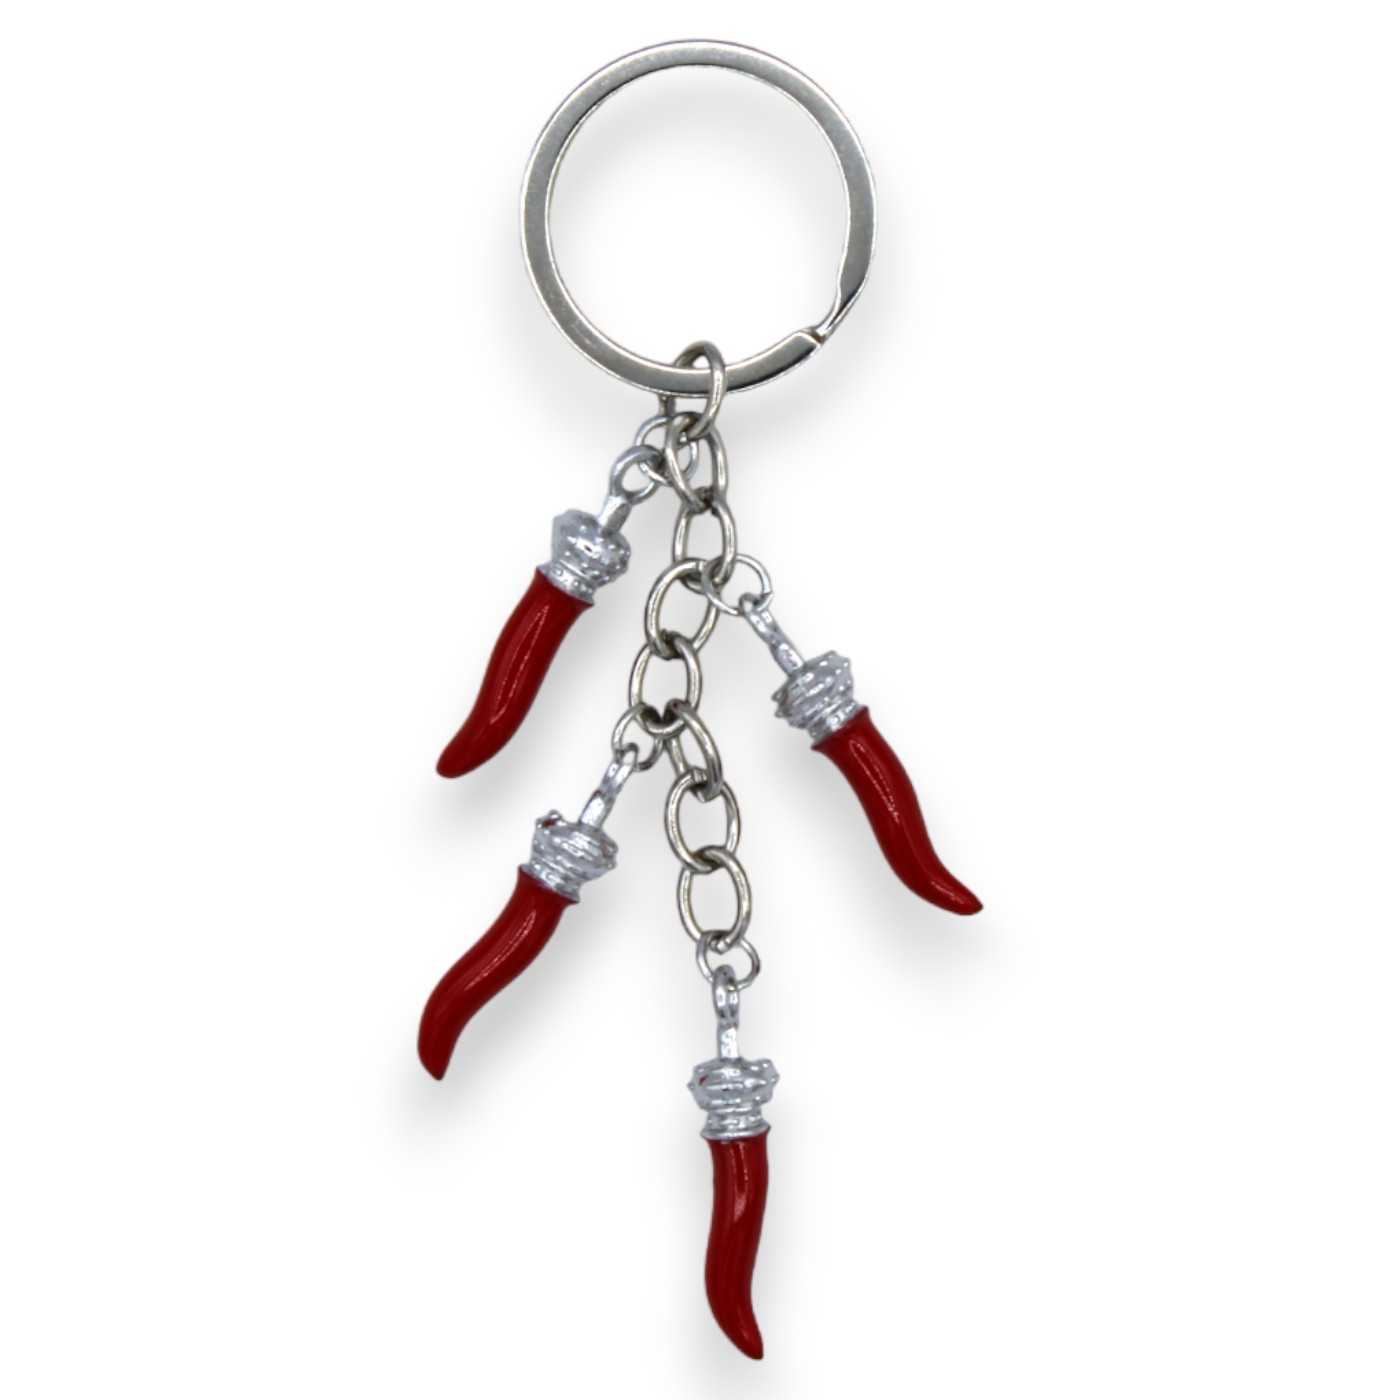 Mavijewel Porte-clés homme femme en acier avec pendentif corne  porte-bonheur personnalisé écriture/corne/patte/arbre/main de